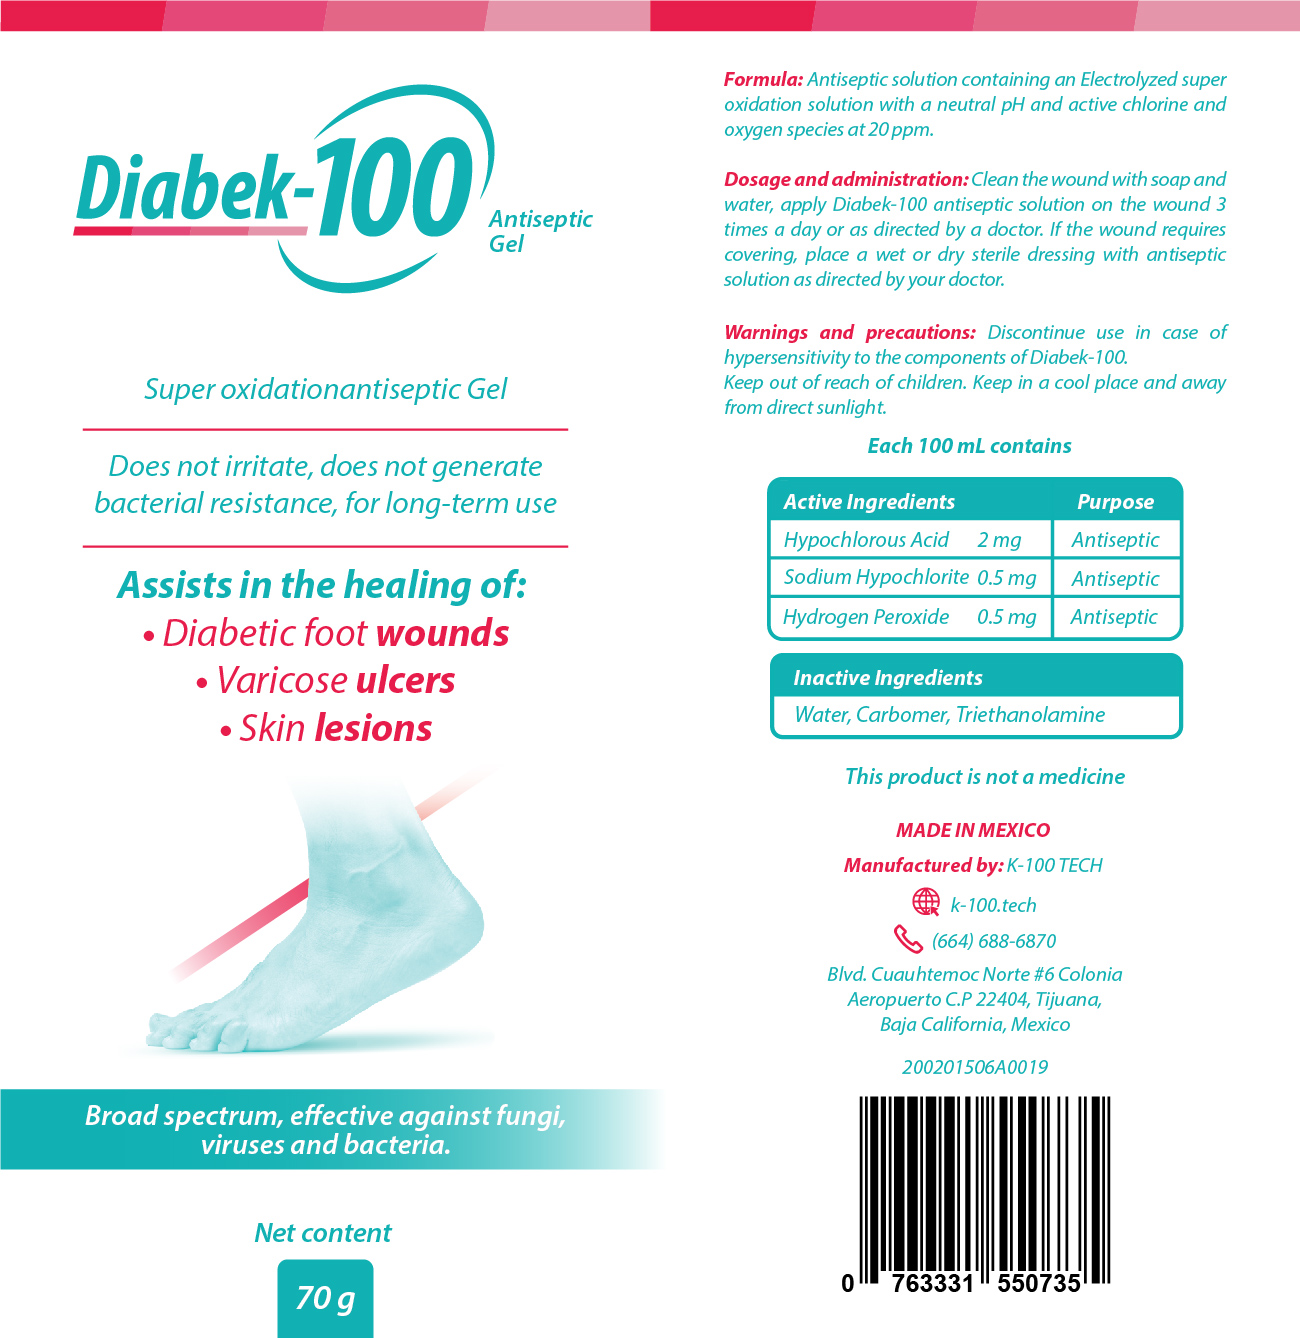 diabek-100 antiseptic gel